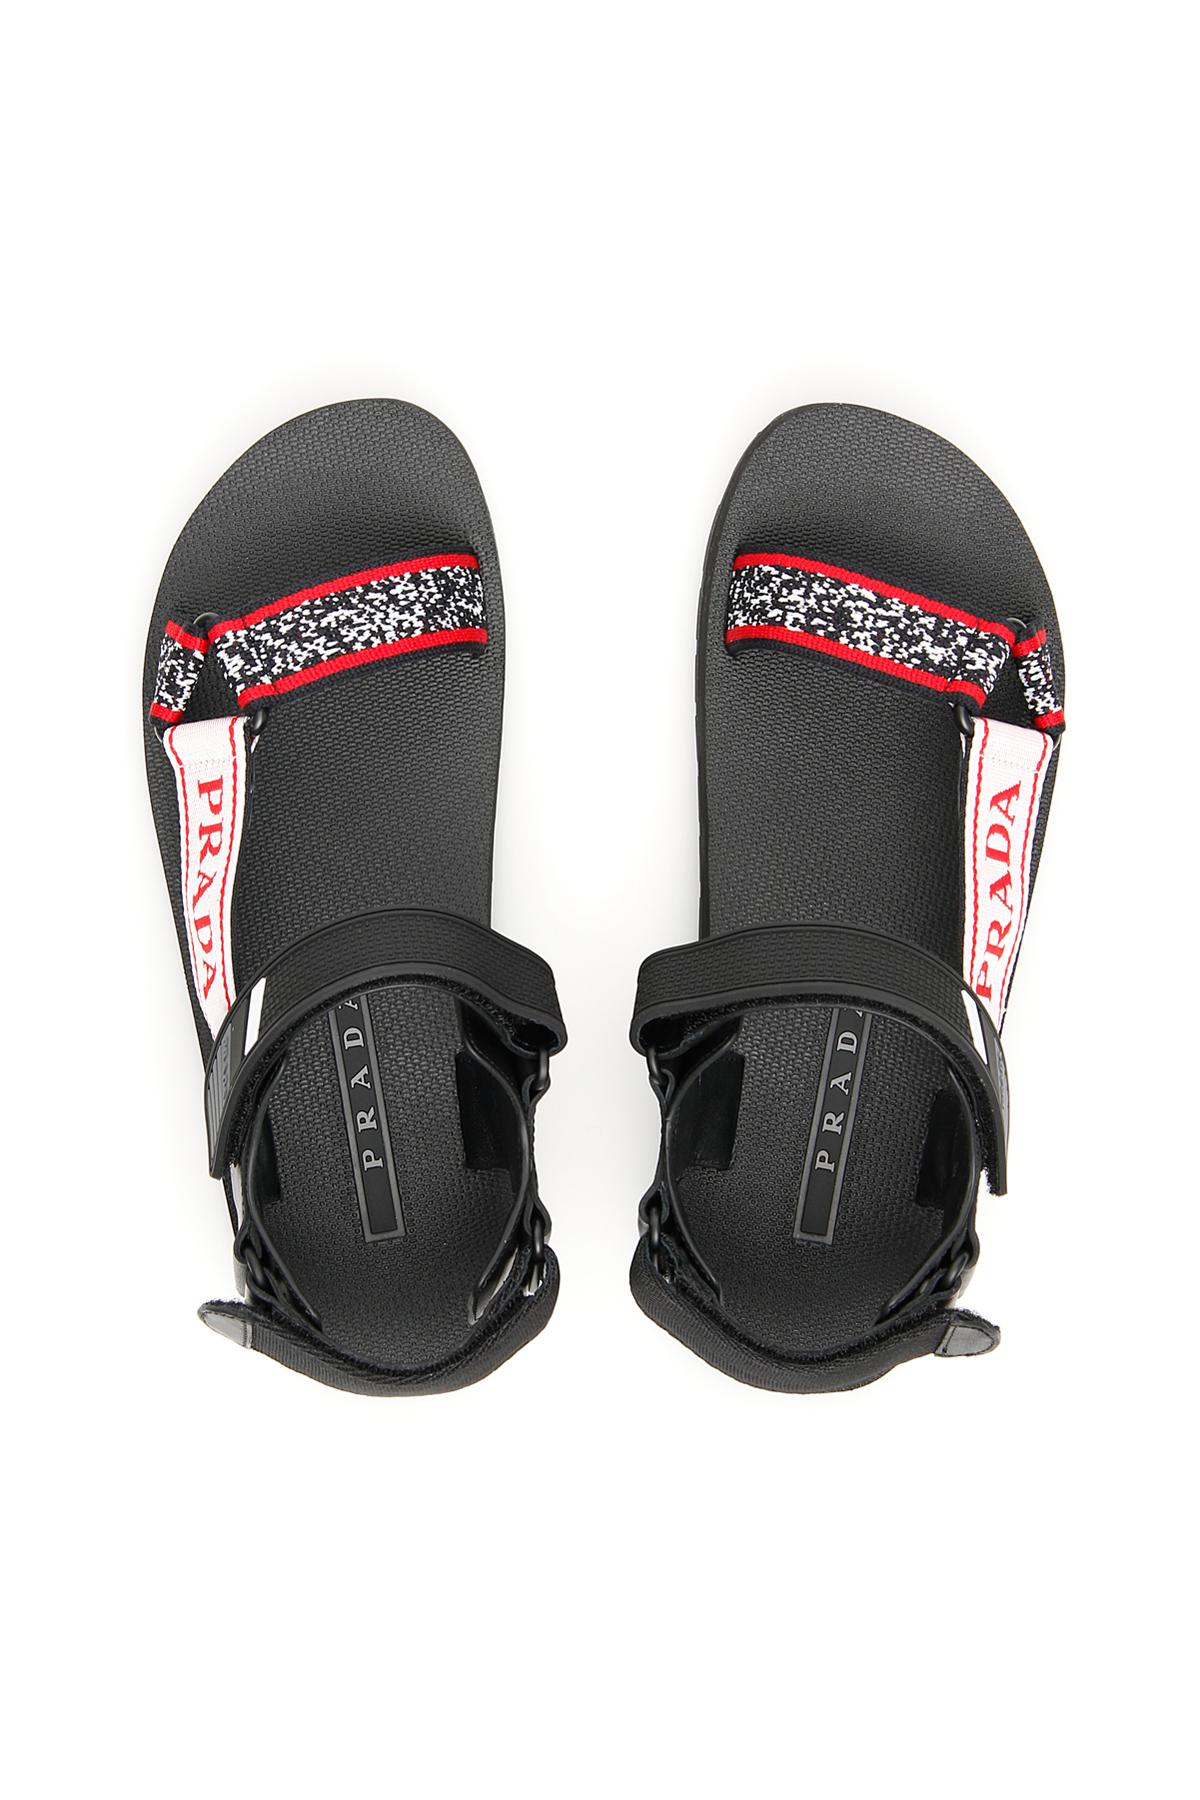 Prada Logo Nomad Sandals in Black - Lyst